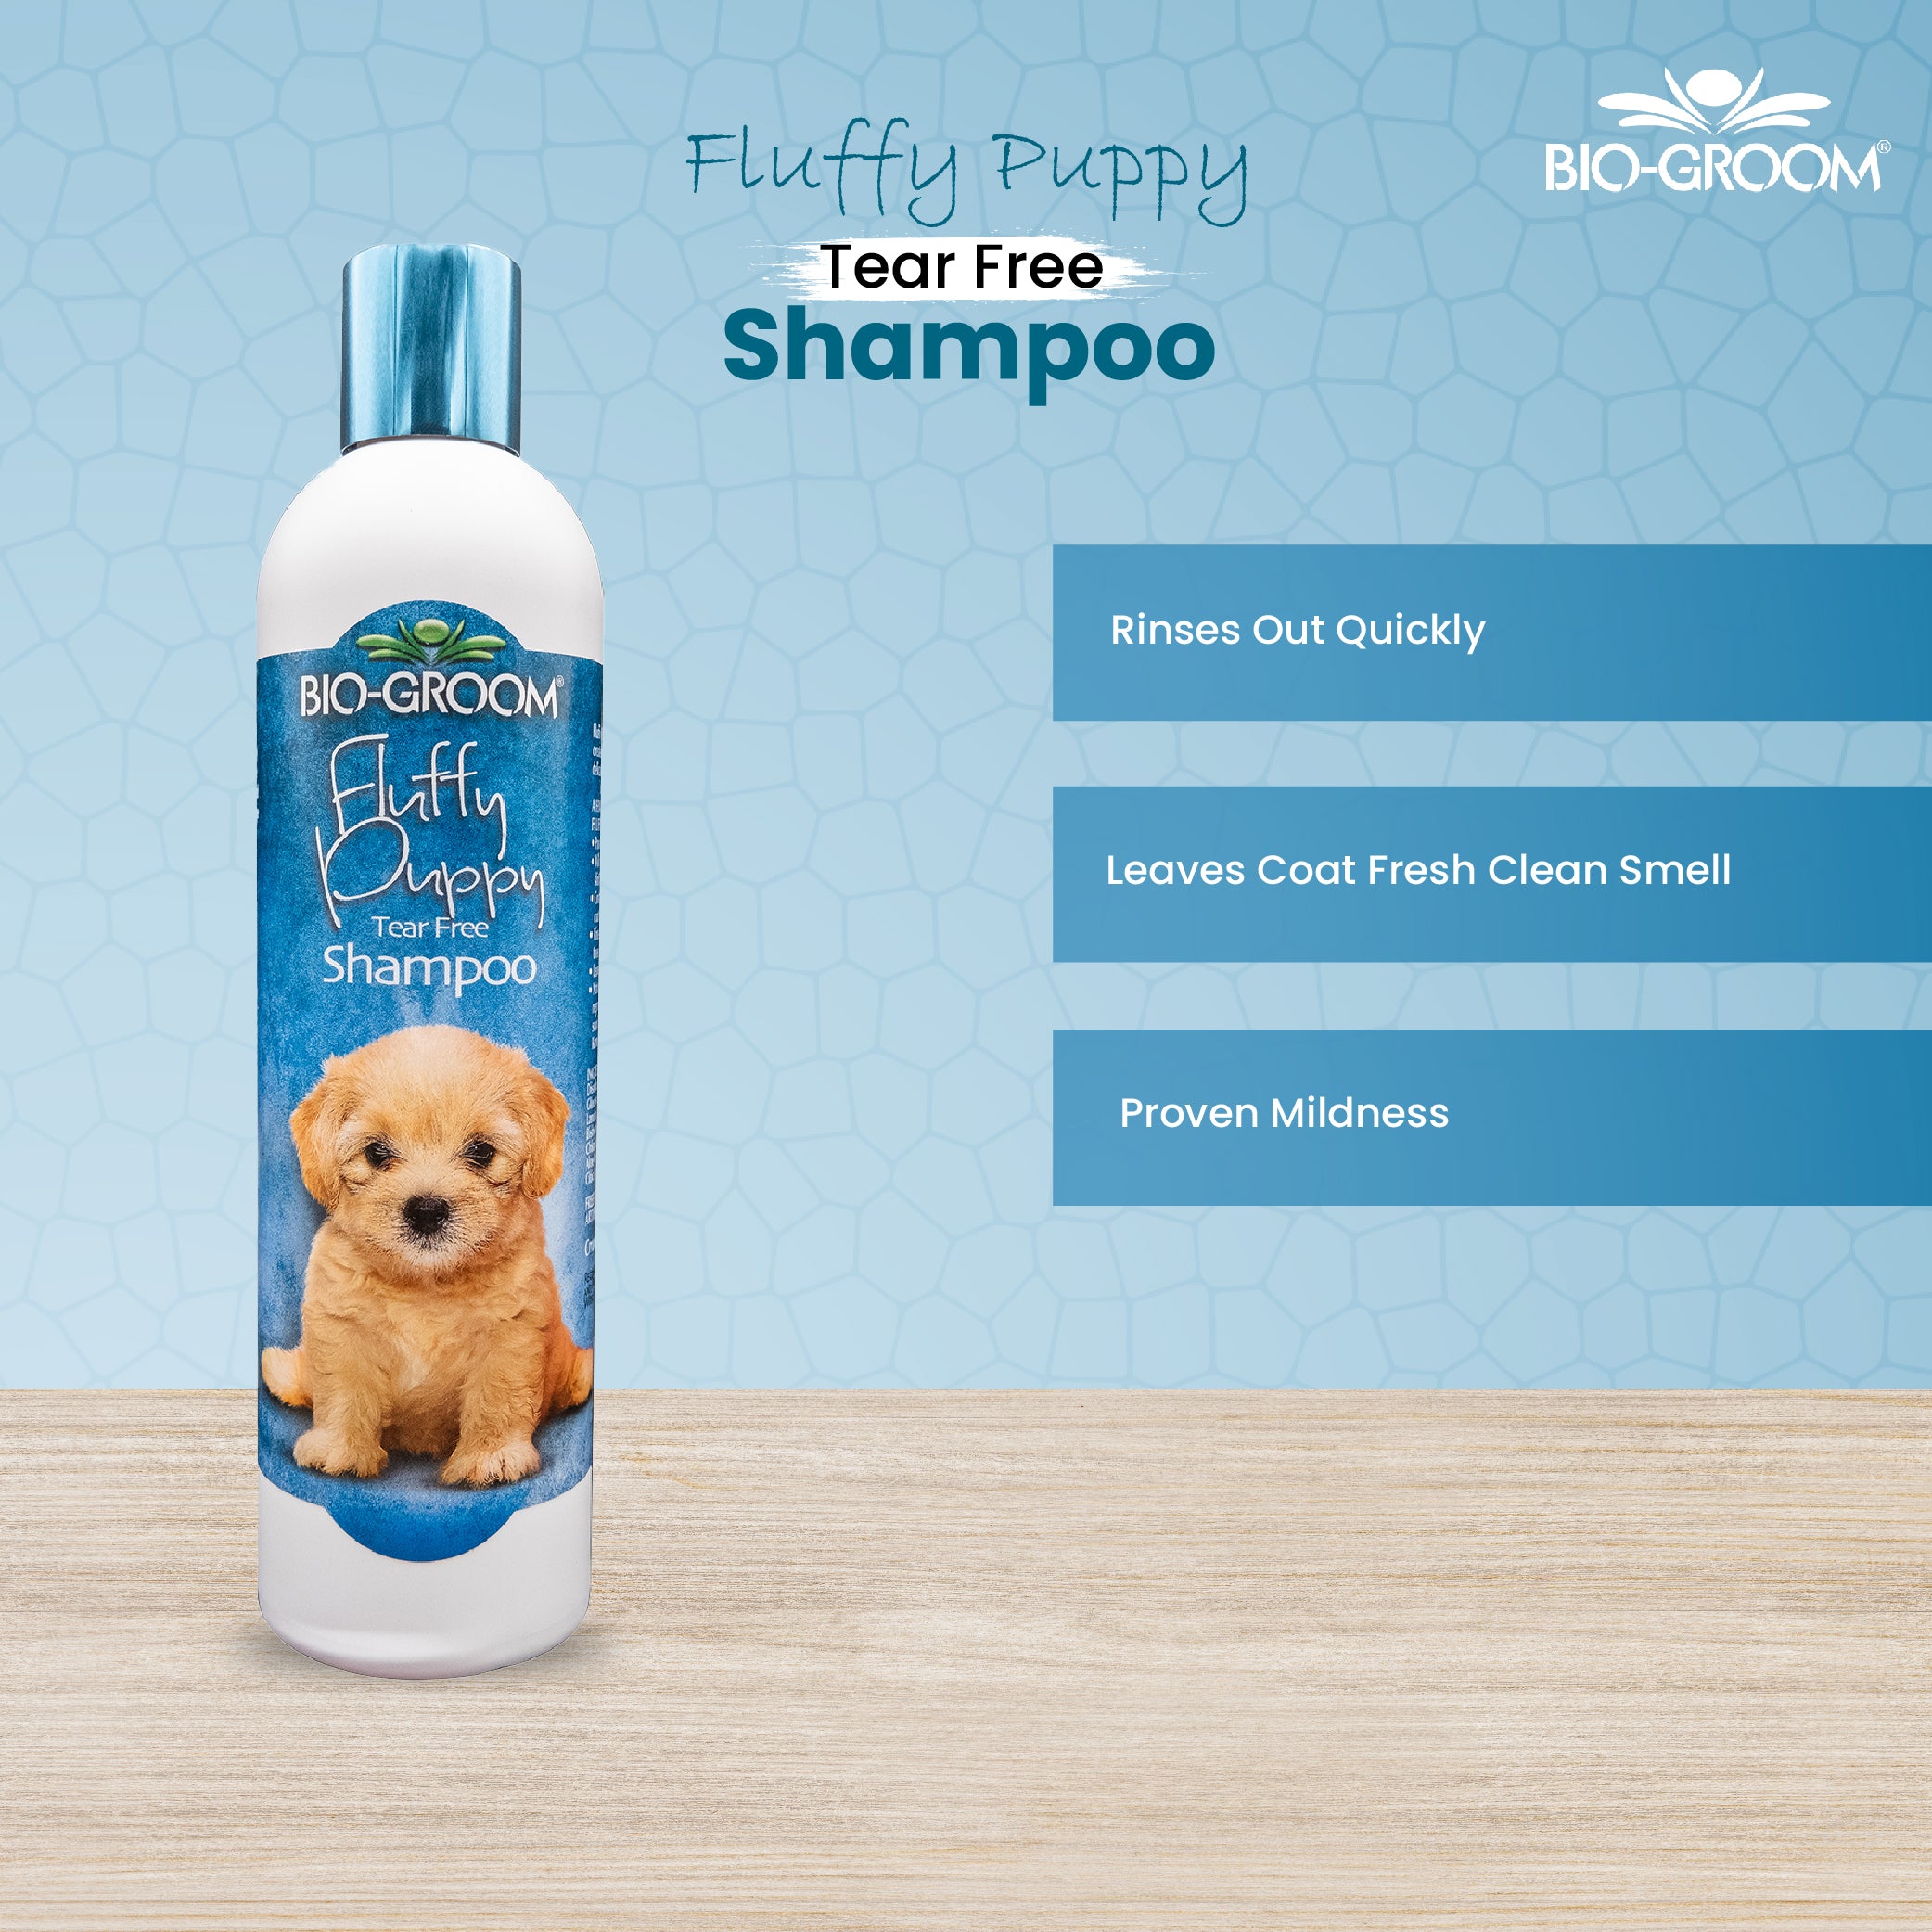 Bio-groom Fluffy Puppy Tear Free Shampoo, 355ml